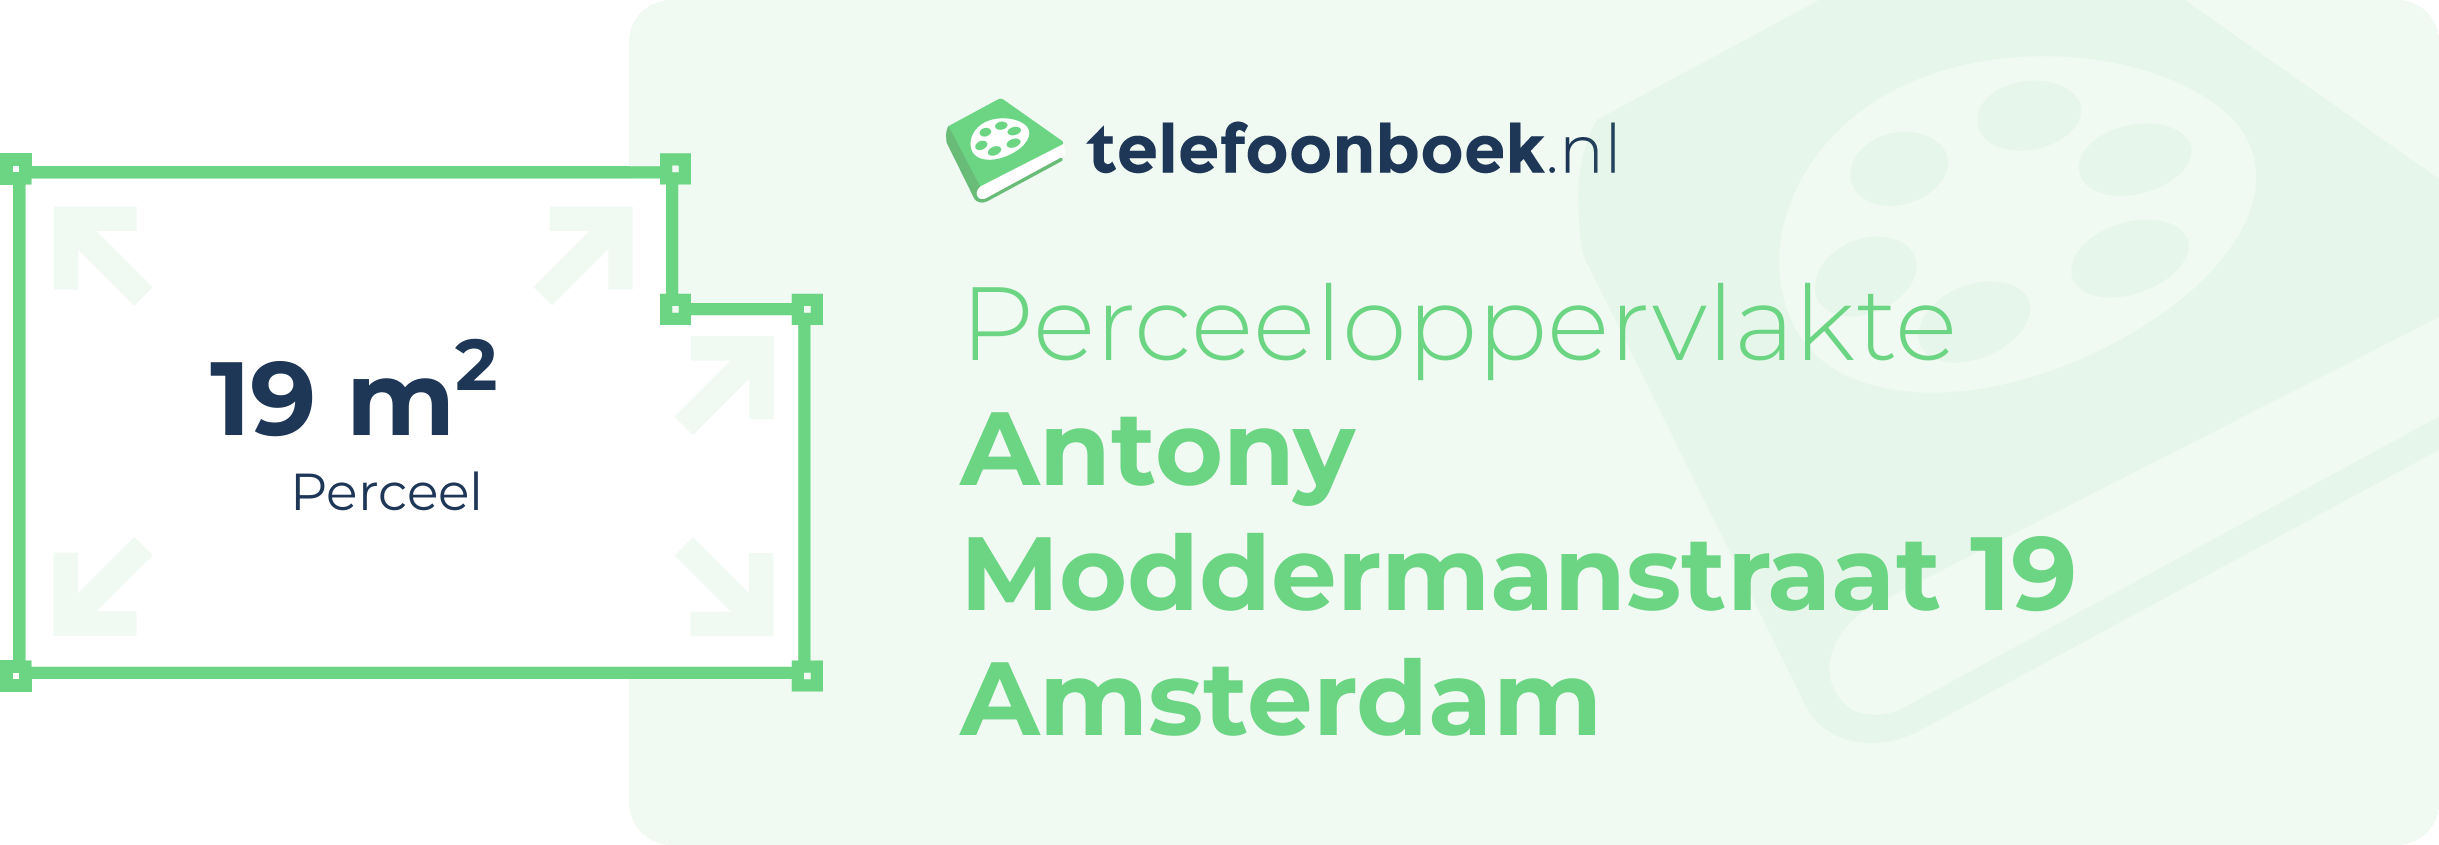 Perceeloppervlakte Antony Moddermanstraat 19 Amsterdam